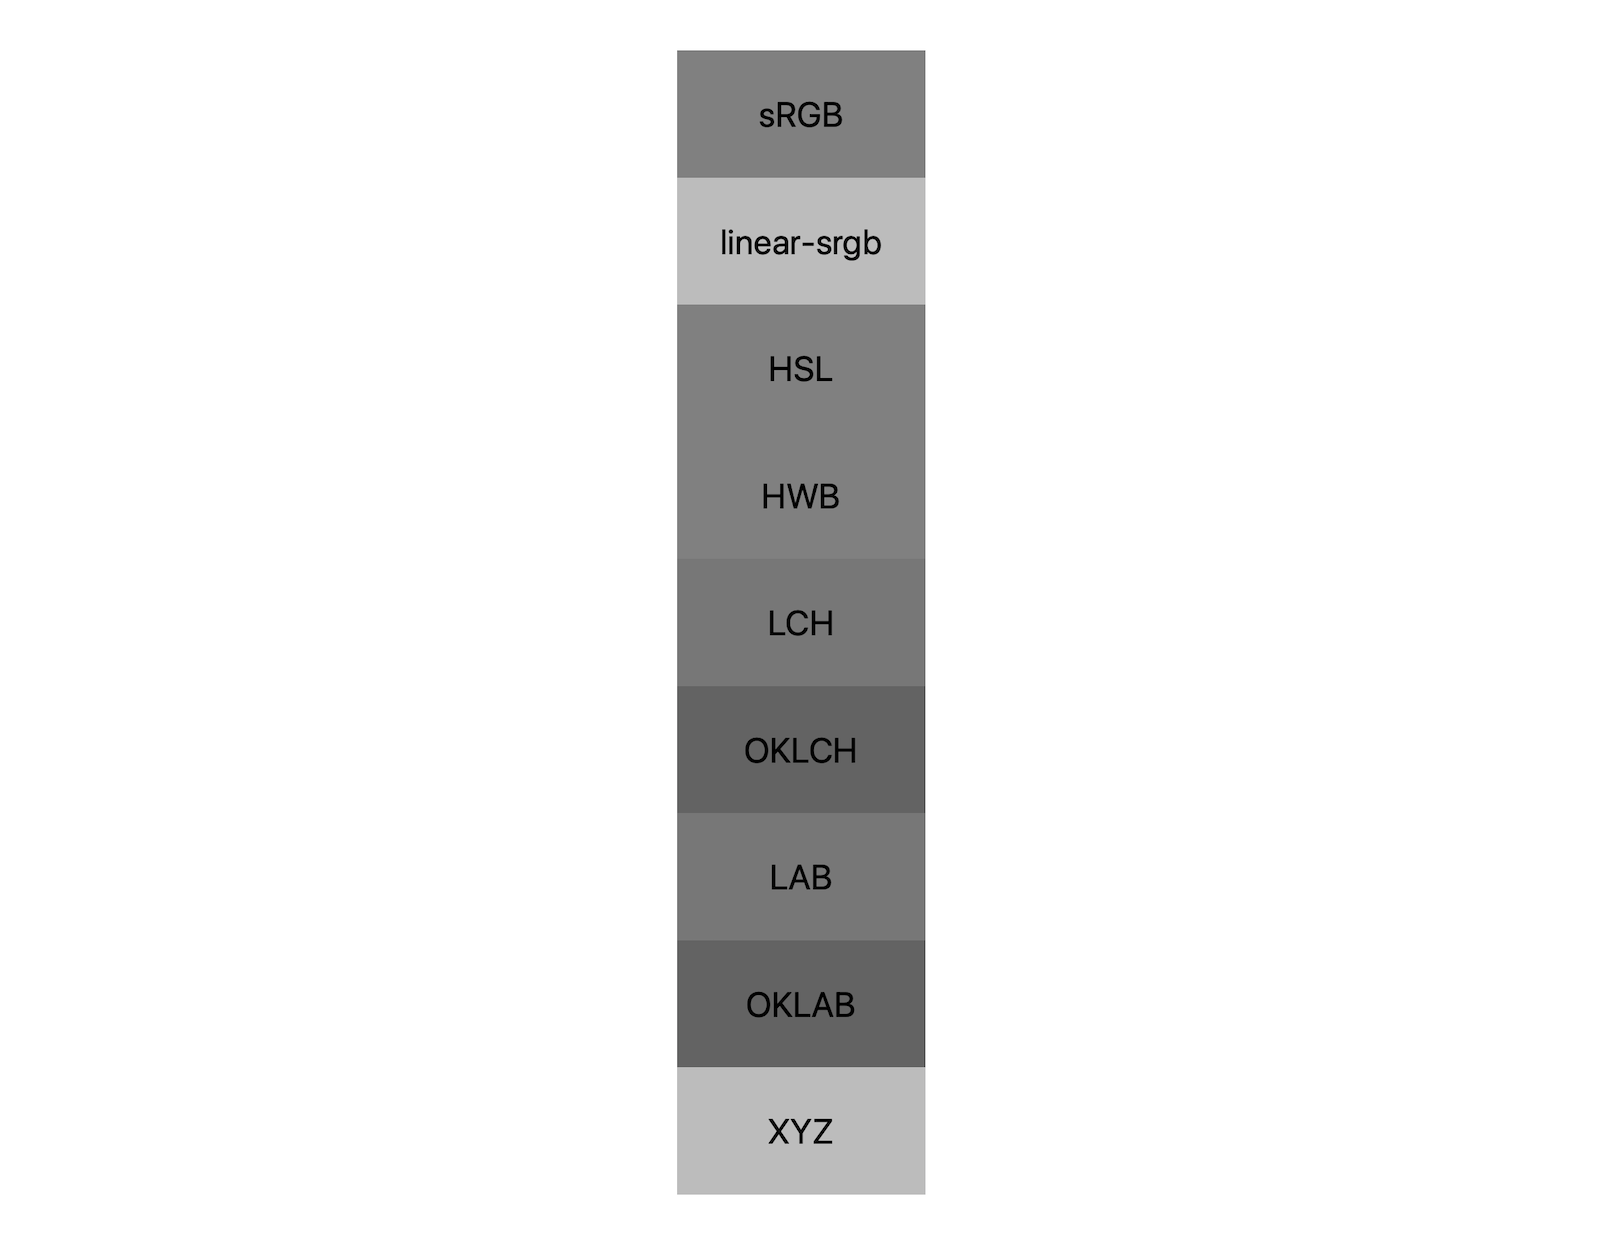 พื้นที่สี 7 แห่ง (srgb, linear-srgb, lch, oklch, lab, oklab, xyz) จะแสดงผลลัพธ์ของการผสมผสานสีขาวและสีดำ จะแสดงเฉดสีที่แตกต่างกันประมาณ 5 เฉดเพื่อแสดงให้เห็นว่าพื้นที่สีแต่ละพื้นที่จะผสมปนกับสีเทาแตกต่างกัน